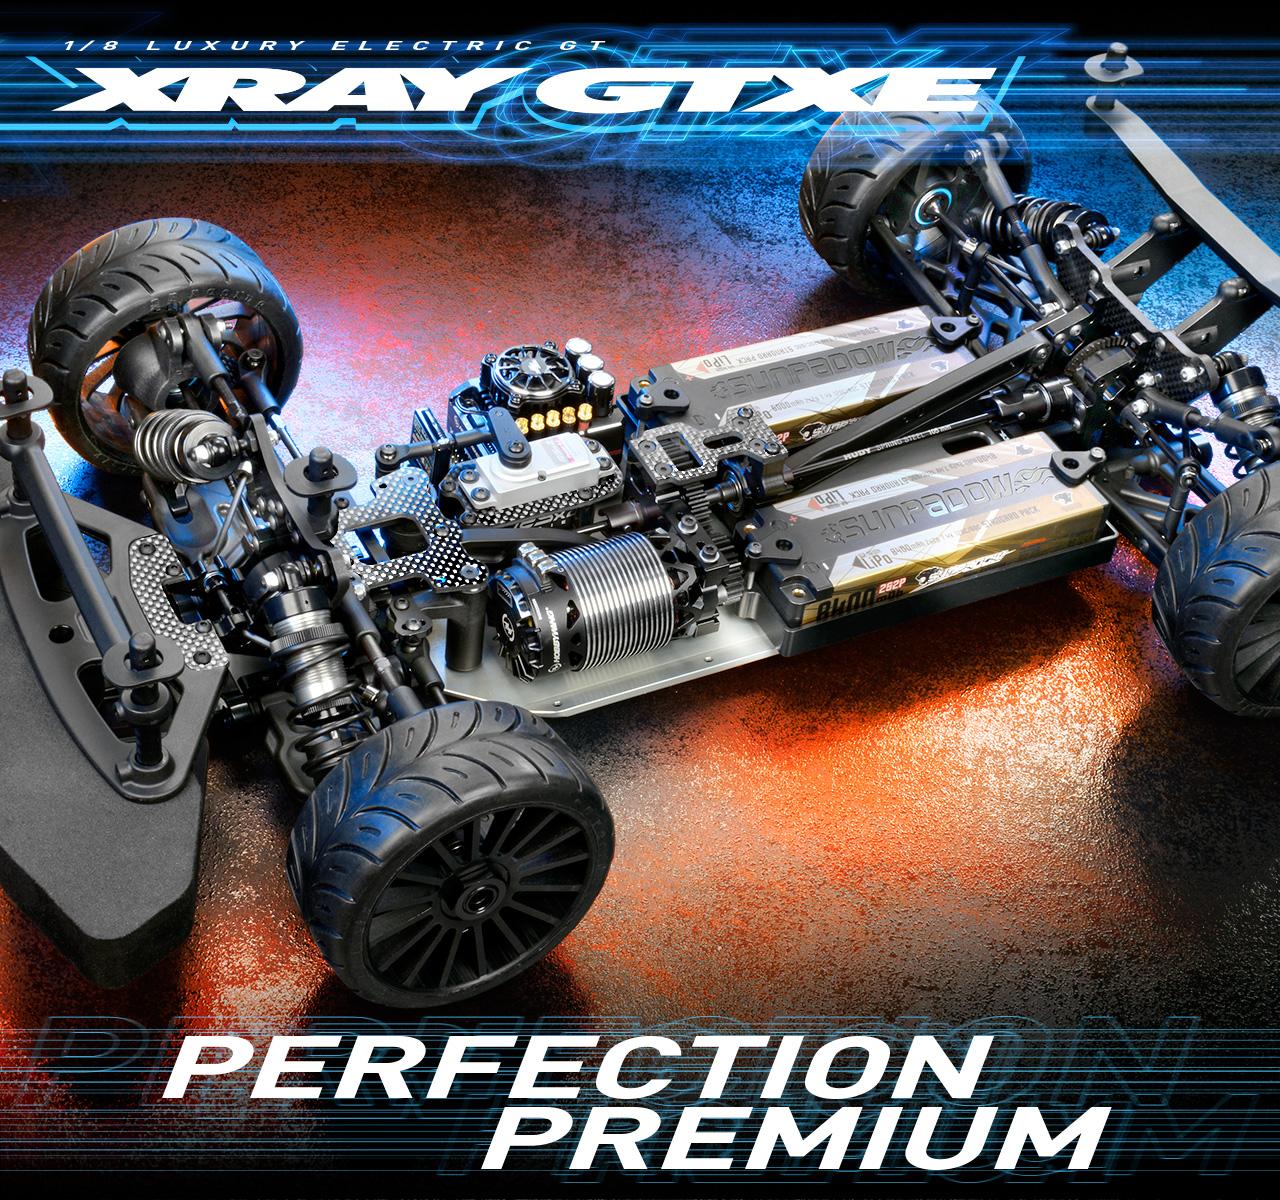 Xray Gtxe 23: High-Performance Off-Road Racer: Xray GTXE 23